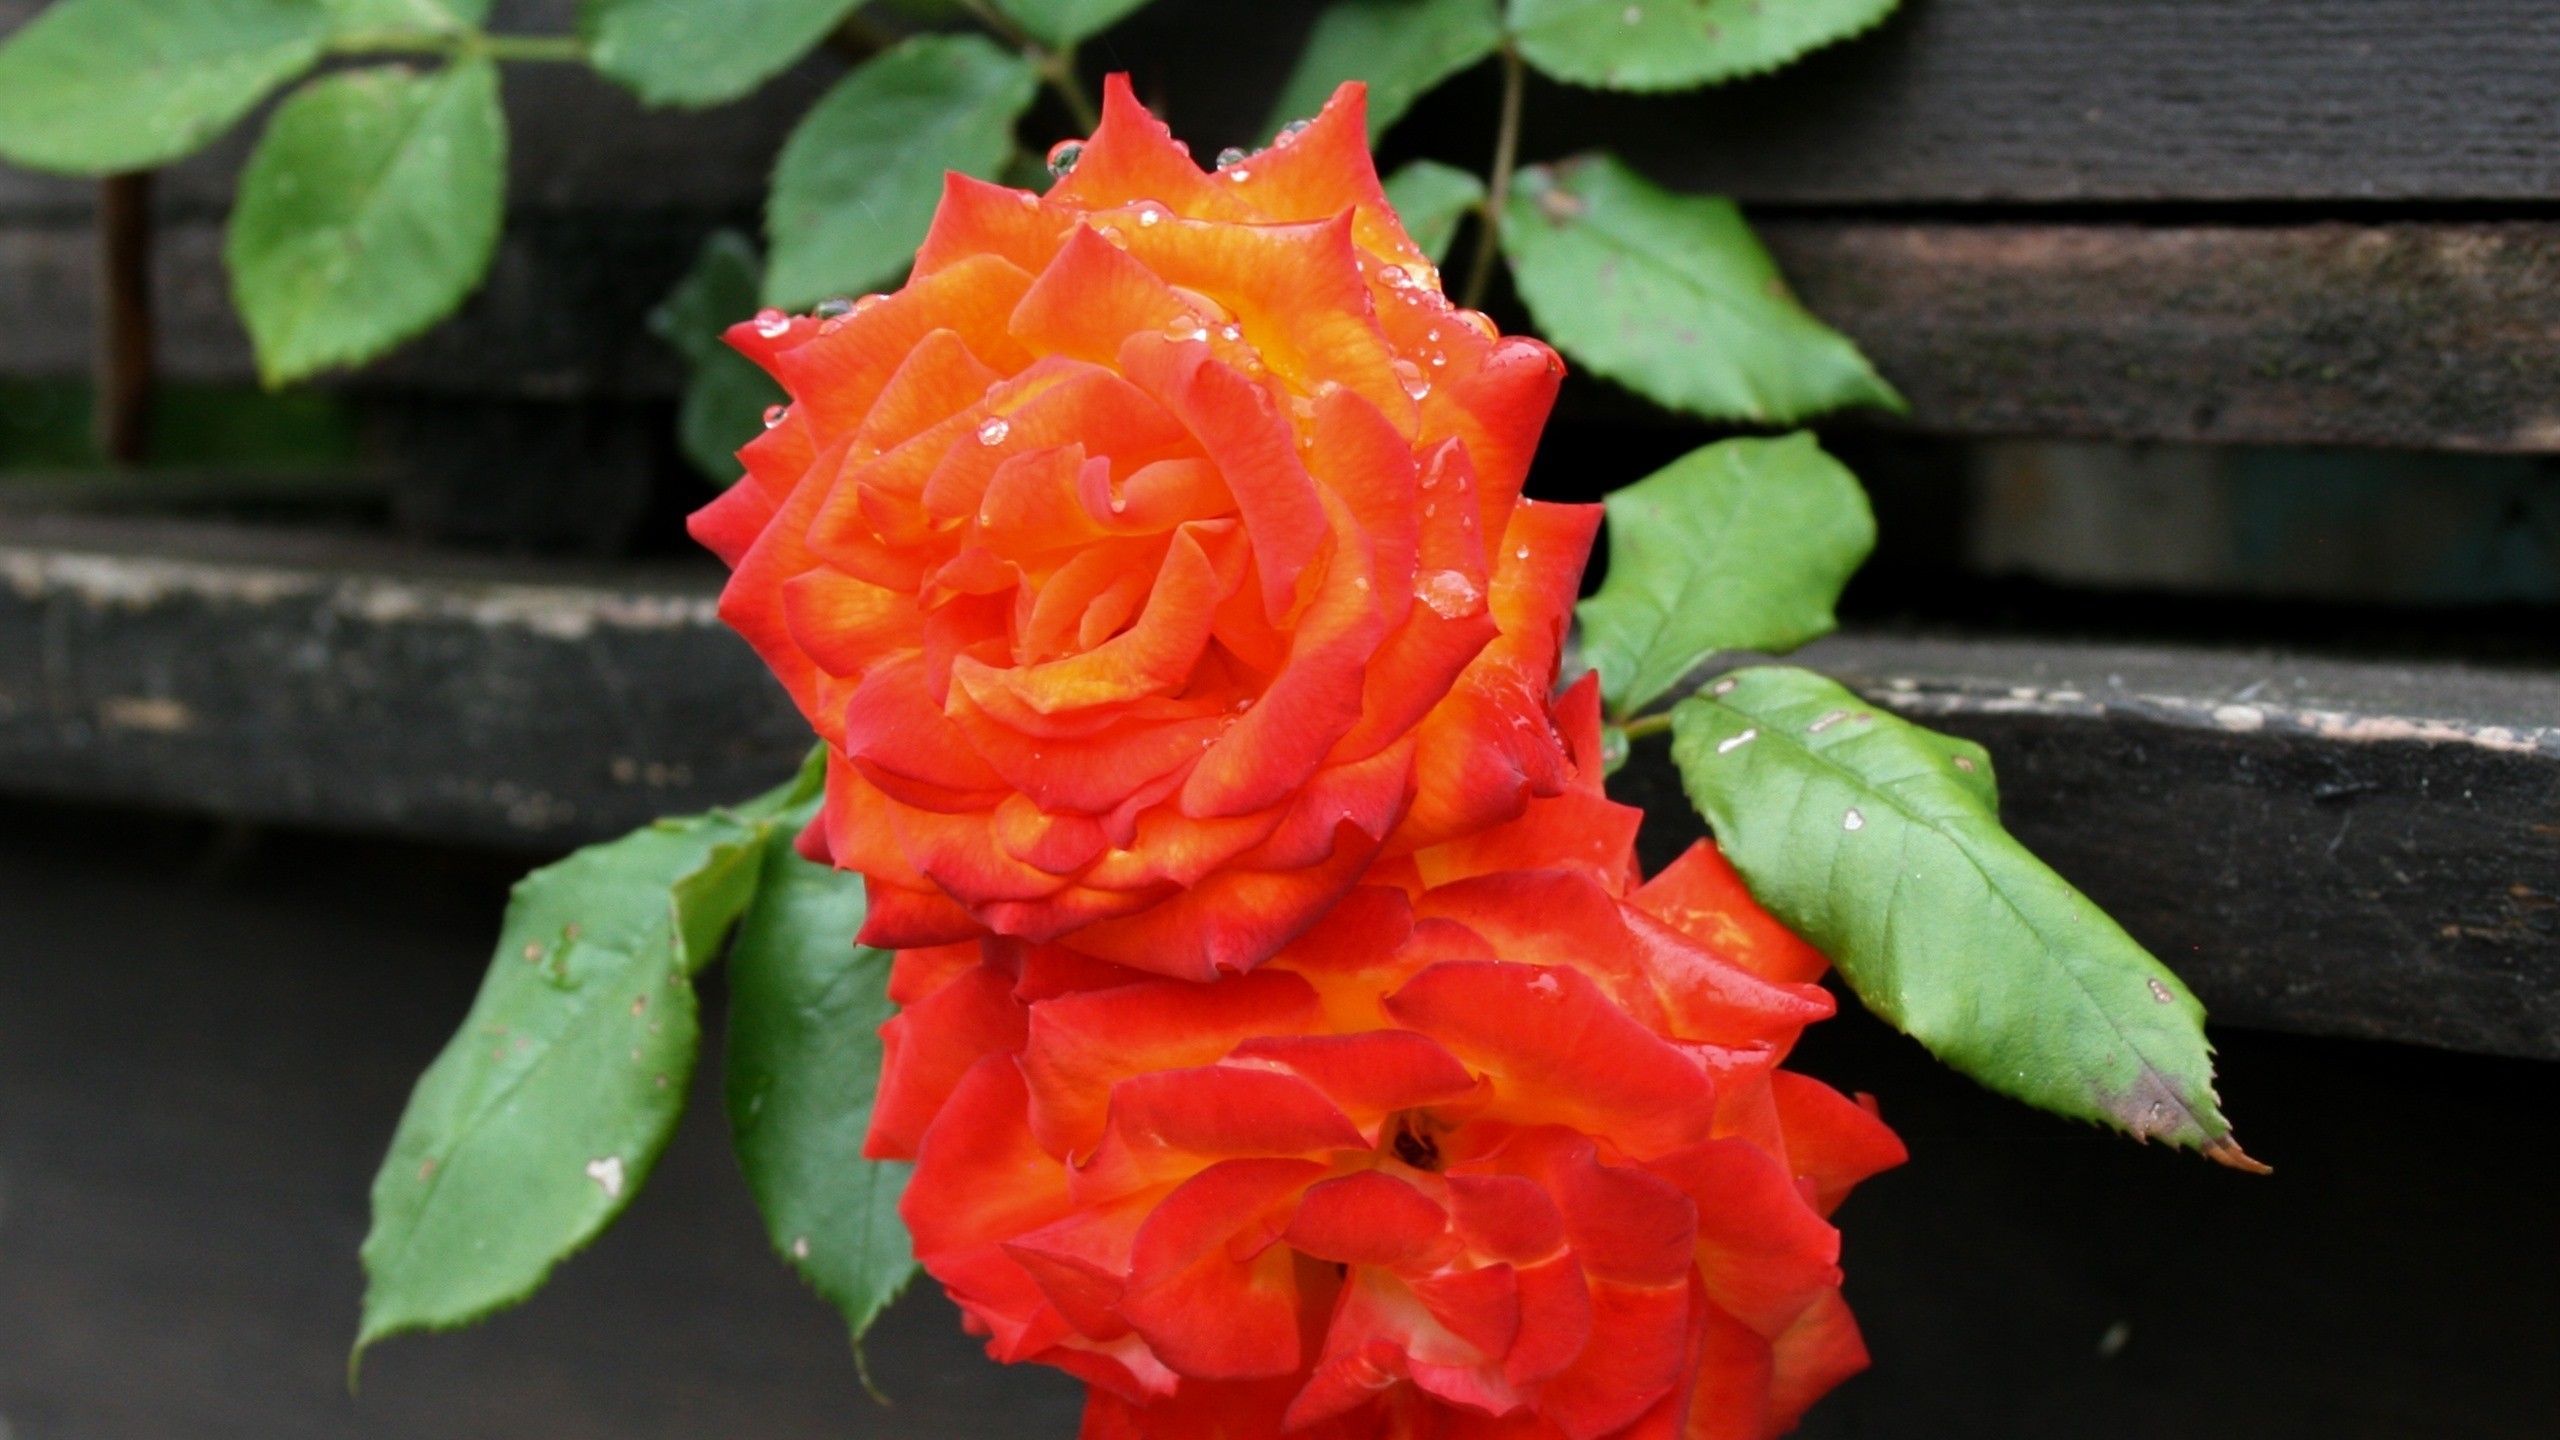 Orange Roses, Petals, Water Drops, Close-up - HD Wallpaper 